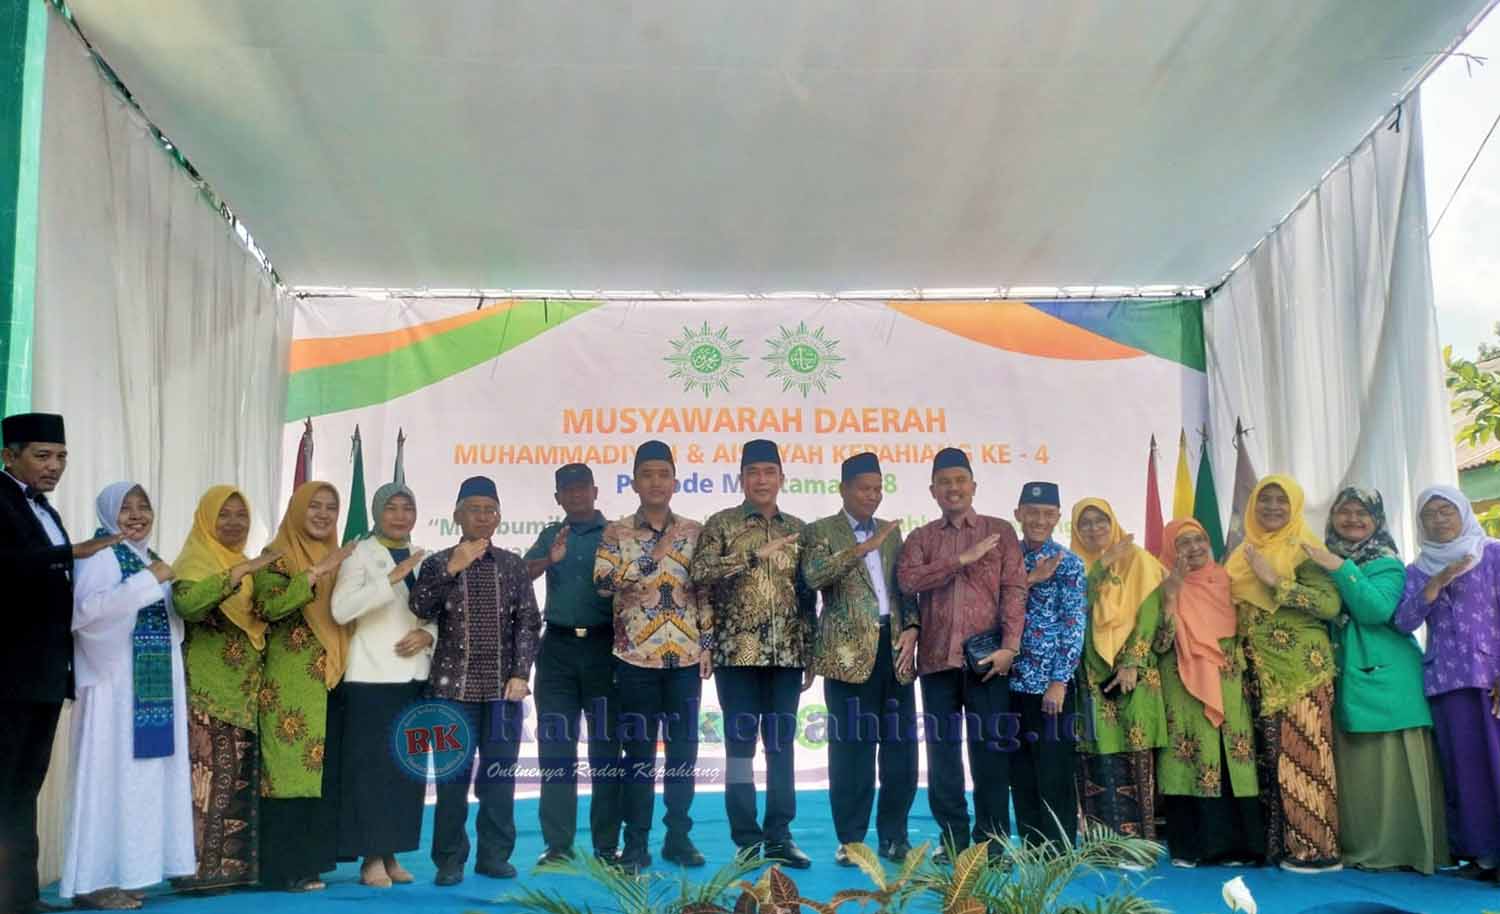 Dihadiri Wabup dan PW Provinsi Bengkulu, Muhammadiyah Kepahiang dan Aisyiyah Sukses Gelar Musda Ke-4 